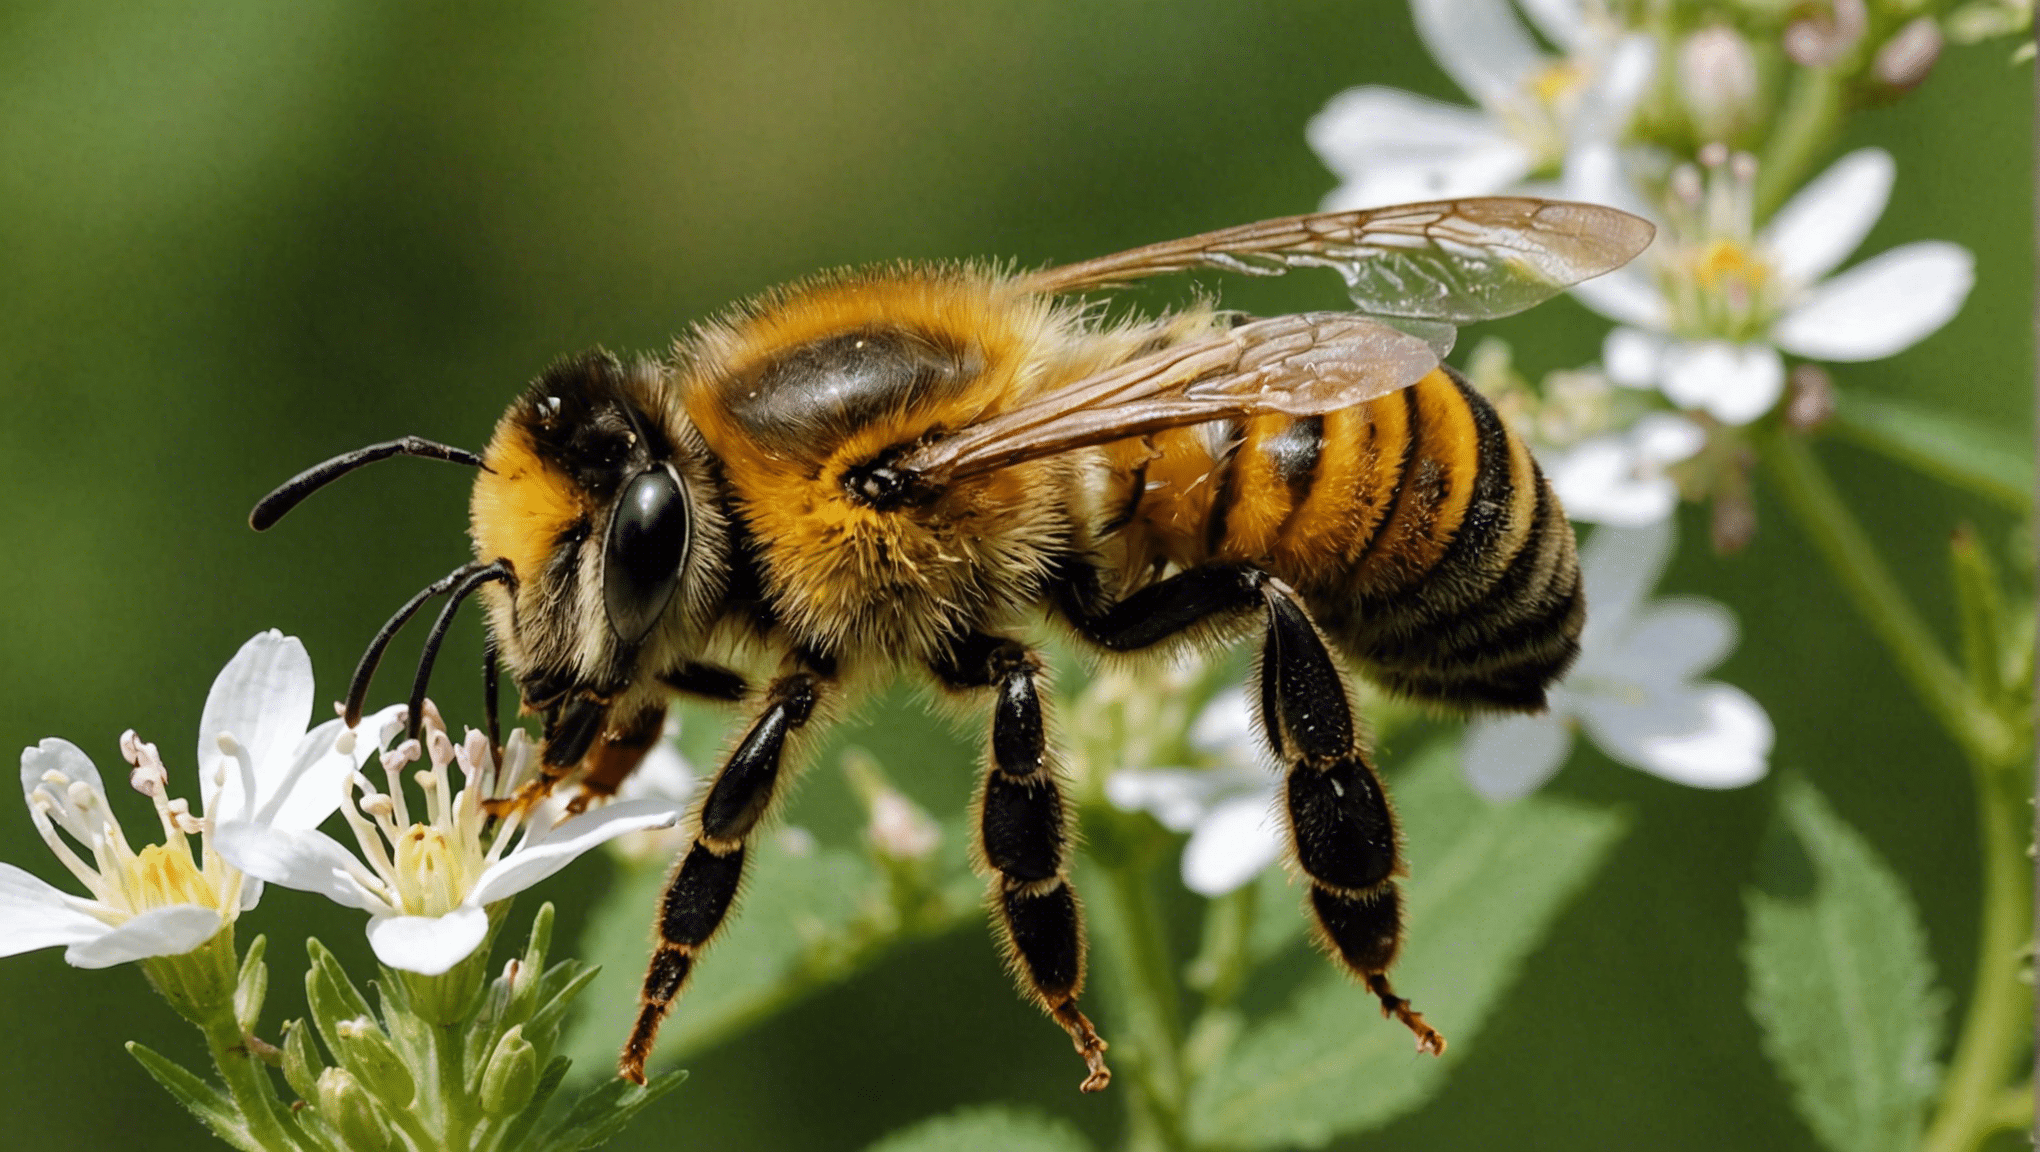 벌이 생물 다양성의 수호자로서 왜 중요한 역할을 하는지, 그리고 그것이 우리 생태계 보존에 어떻게 기여하는지 알아보세요.